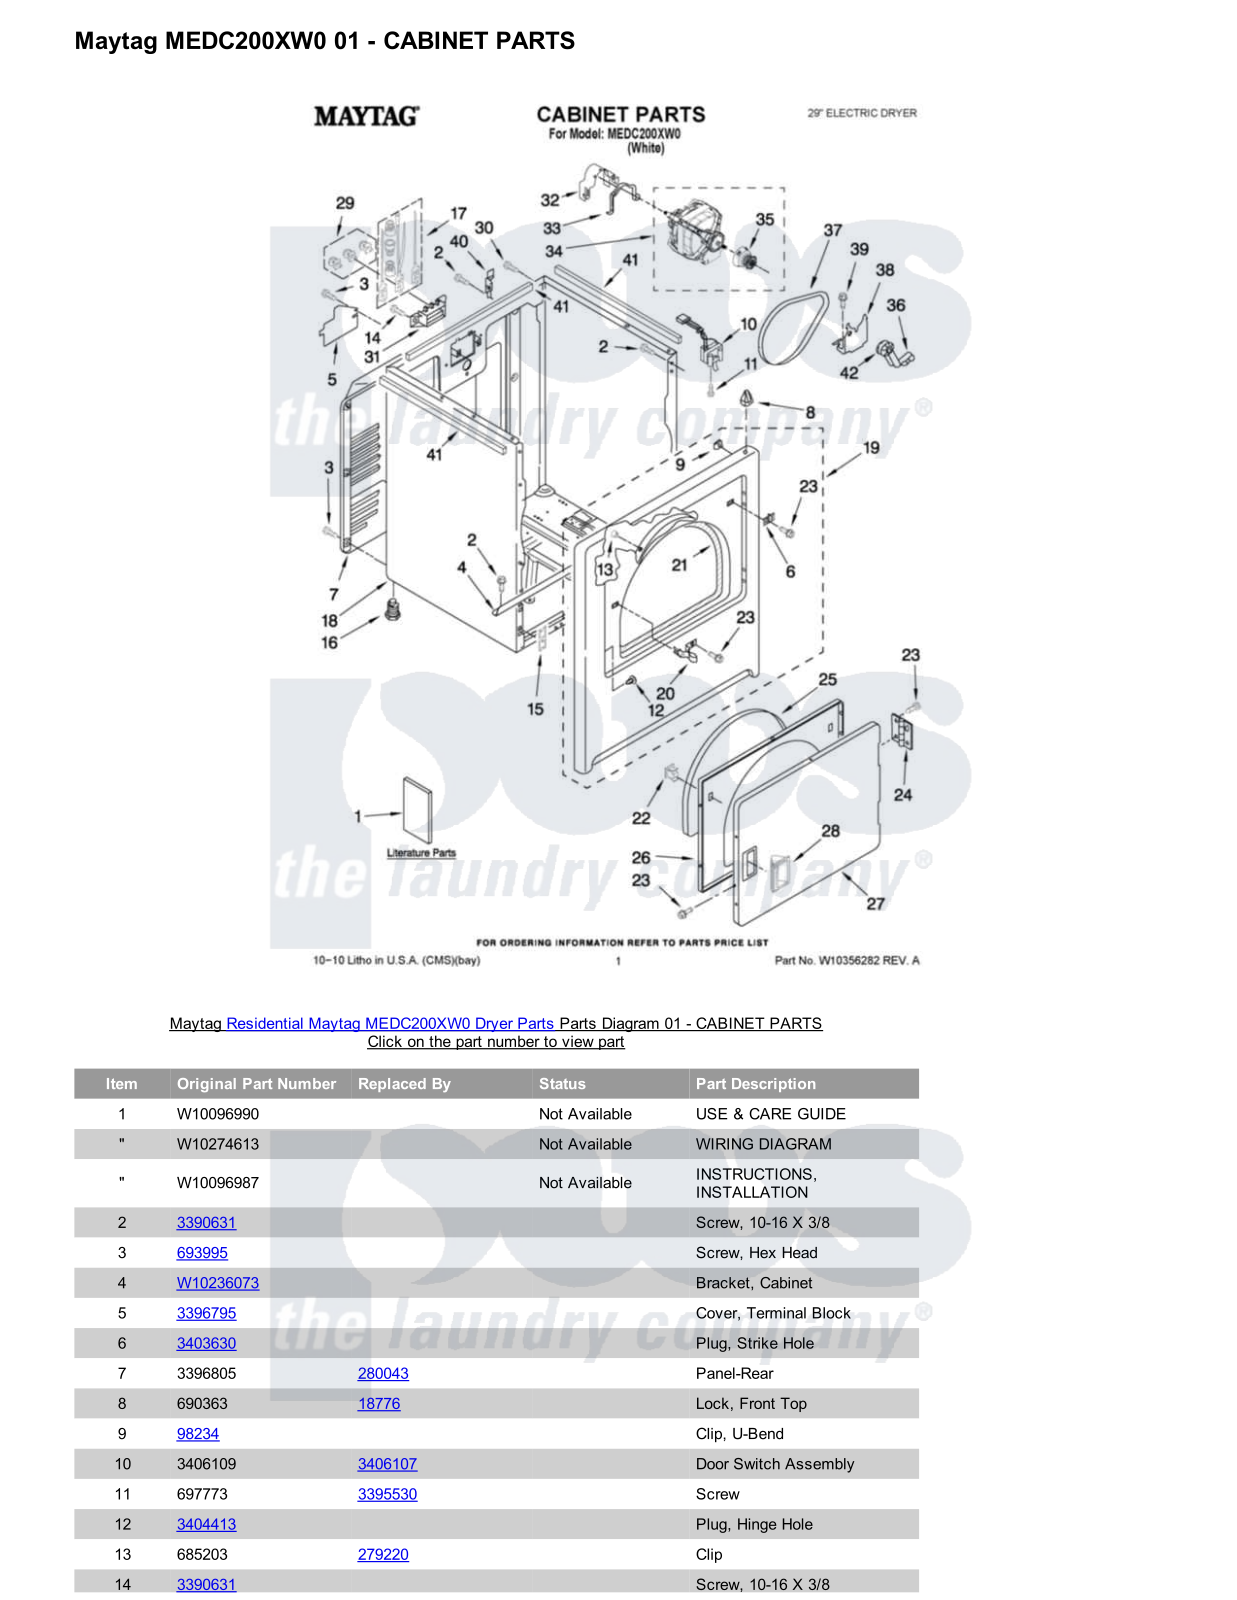 Maytag MEDC200XW0 Parts Diagram